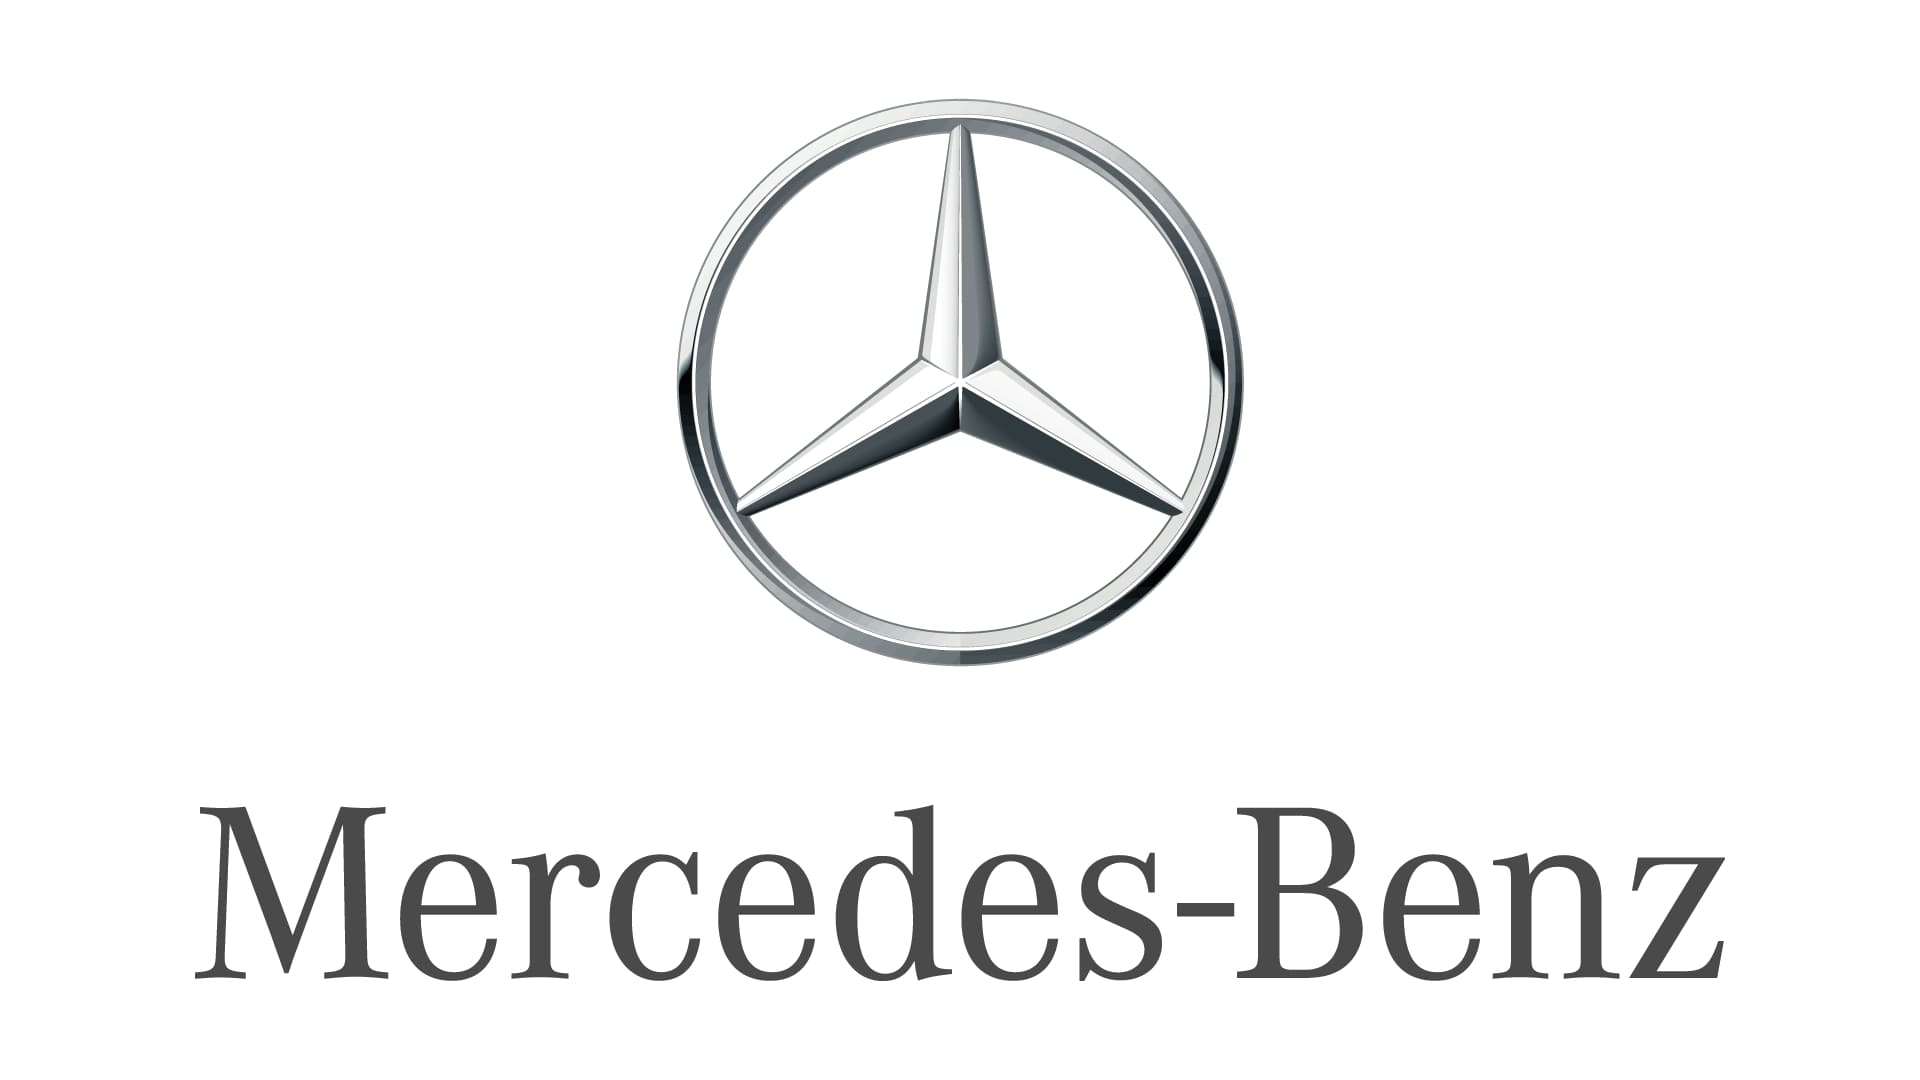 Logos creativos de marcas: Mercedes-Benz